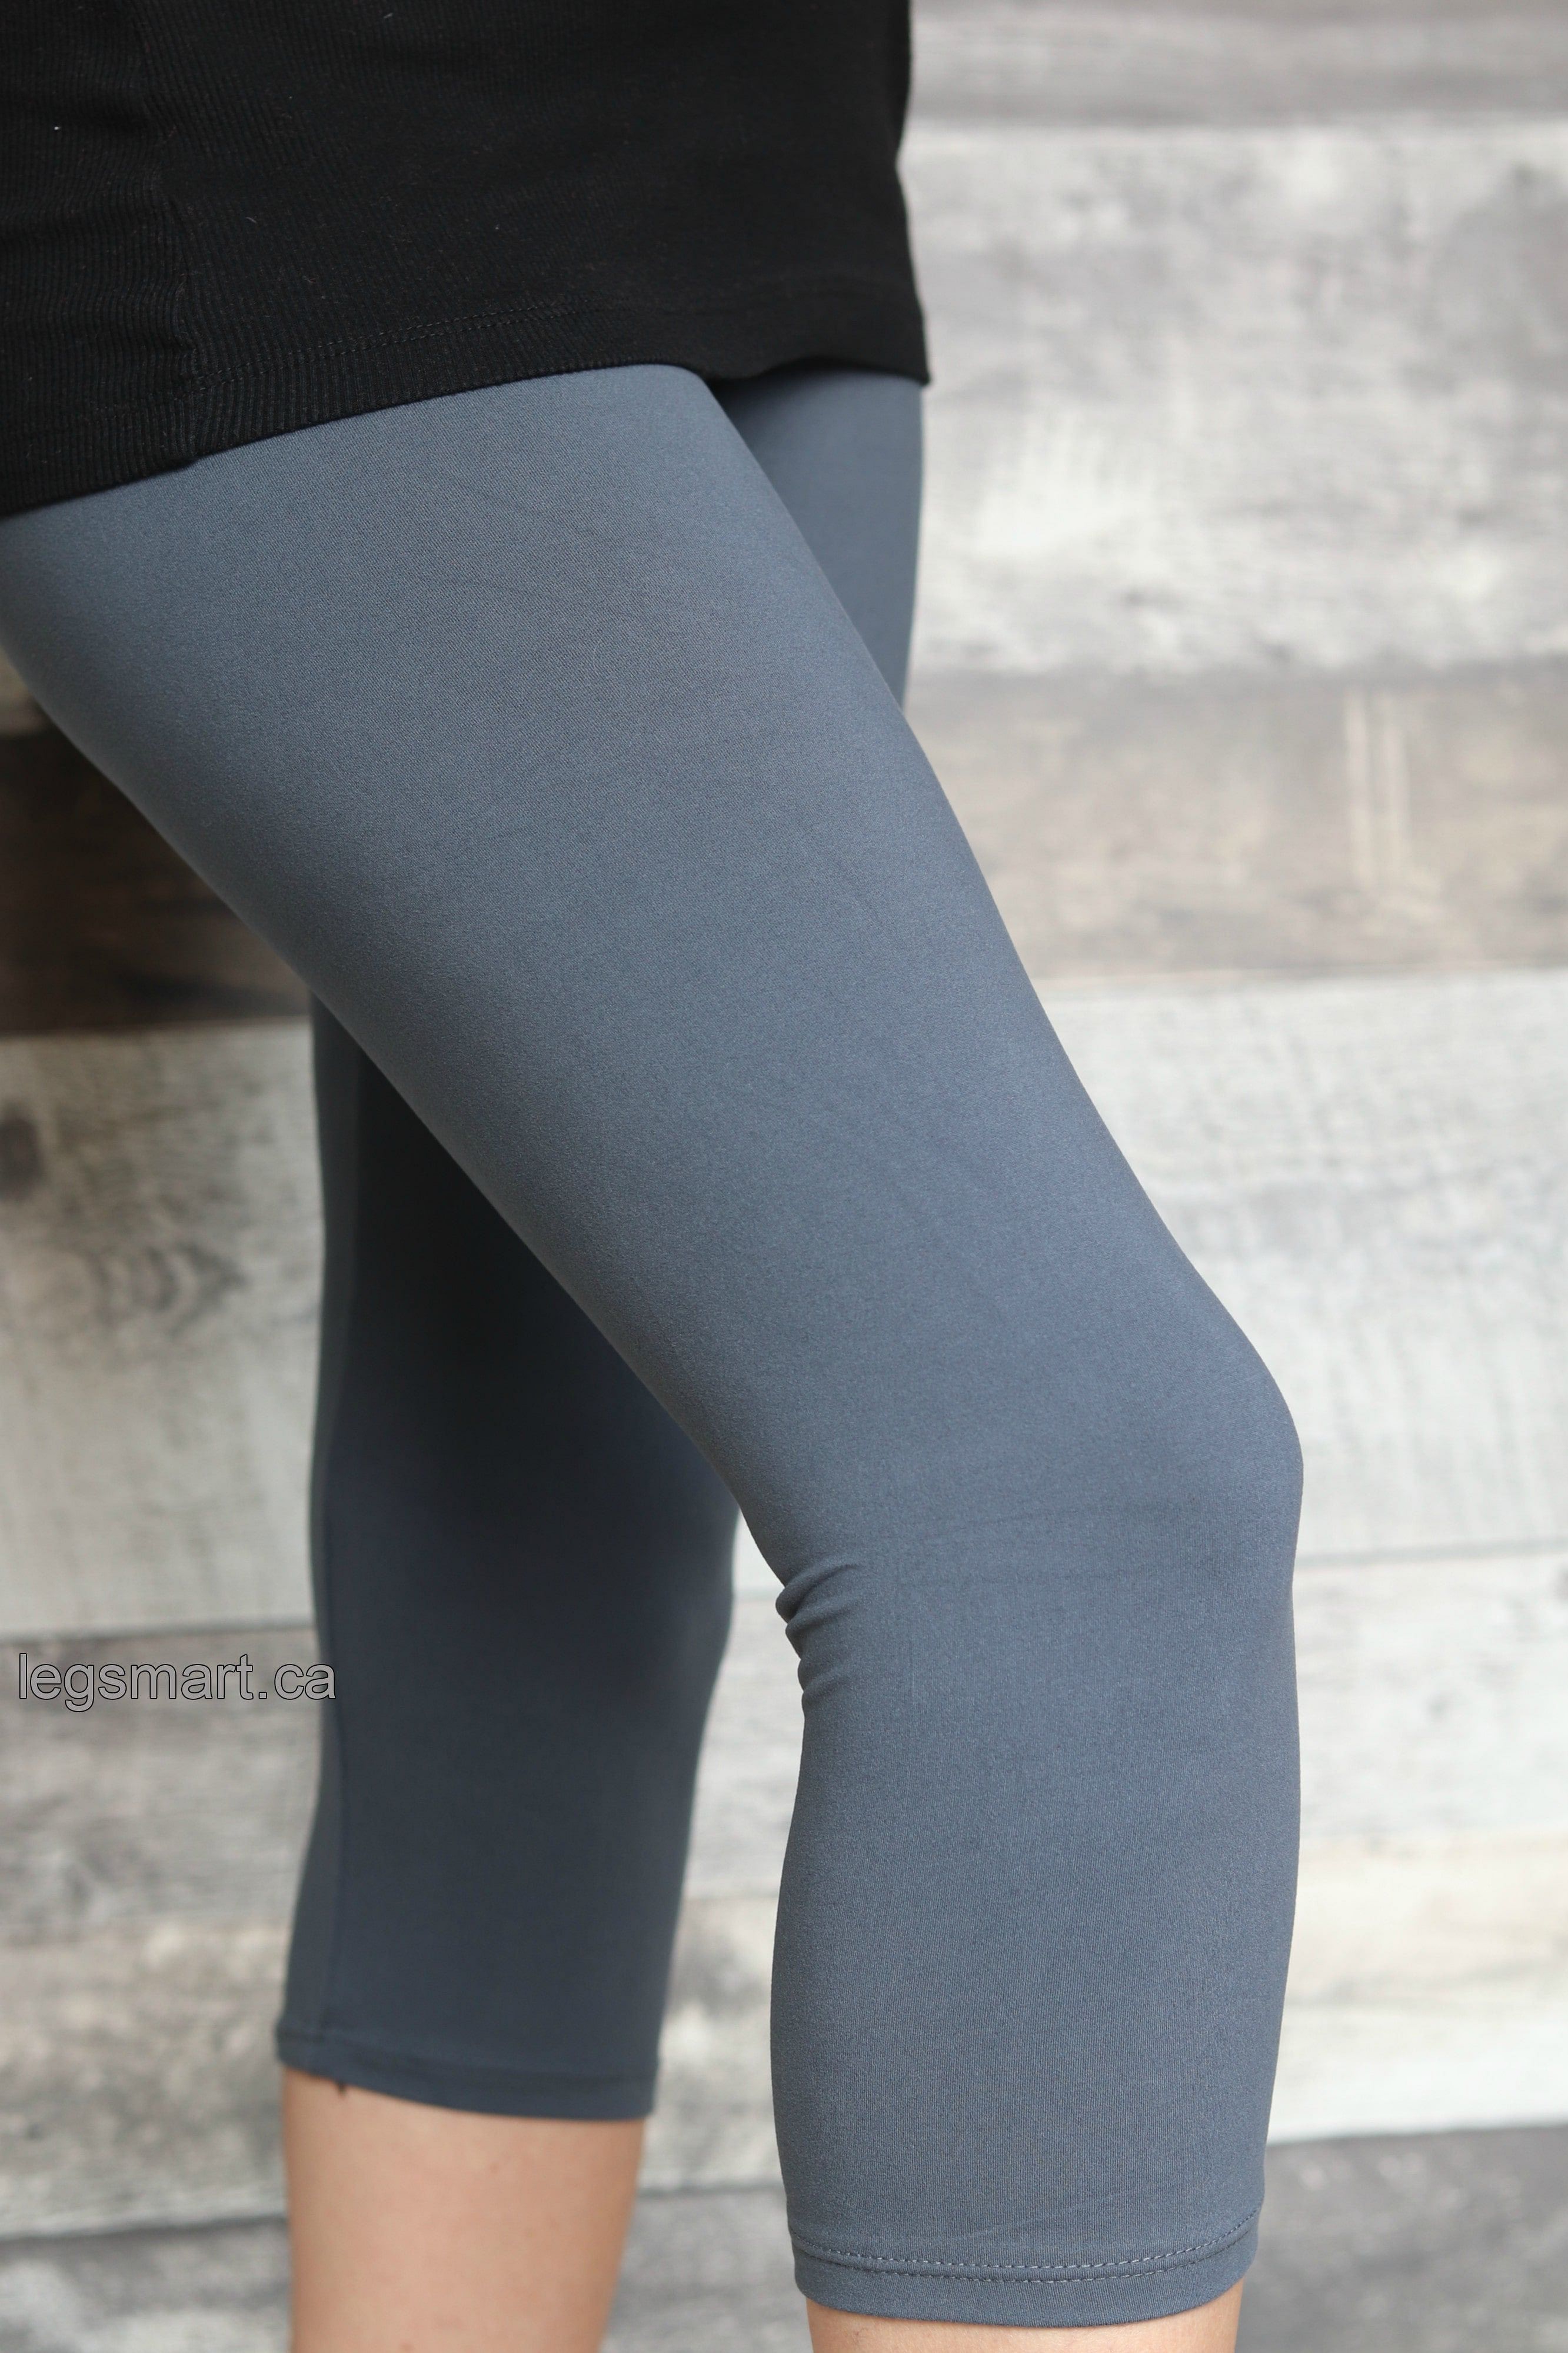 Solid Coloured Leggings - Yoga Band – Leg Smart